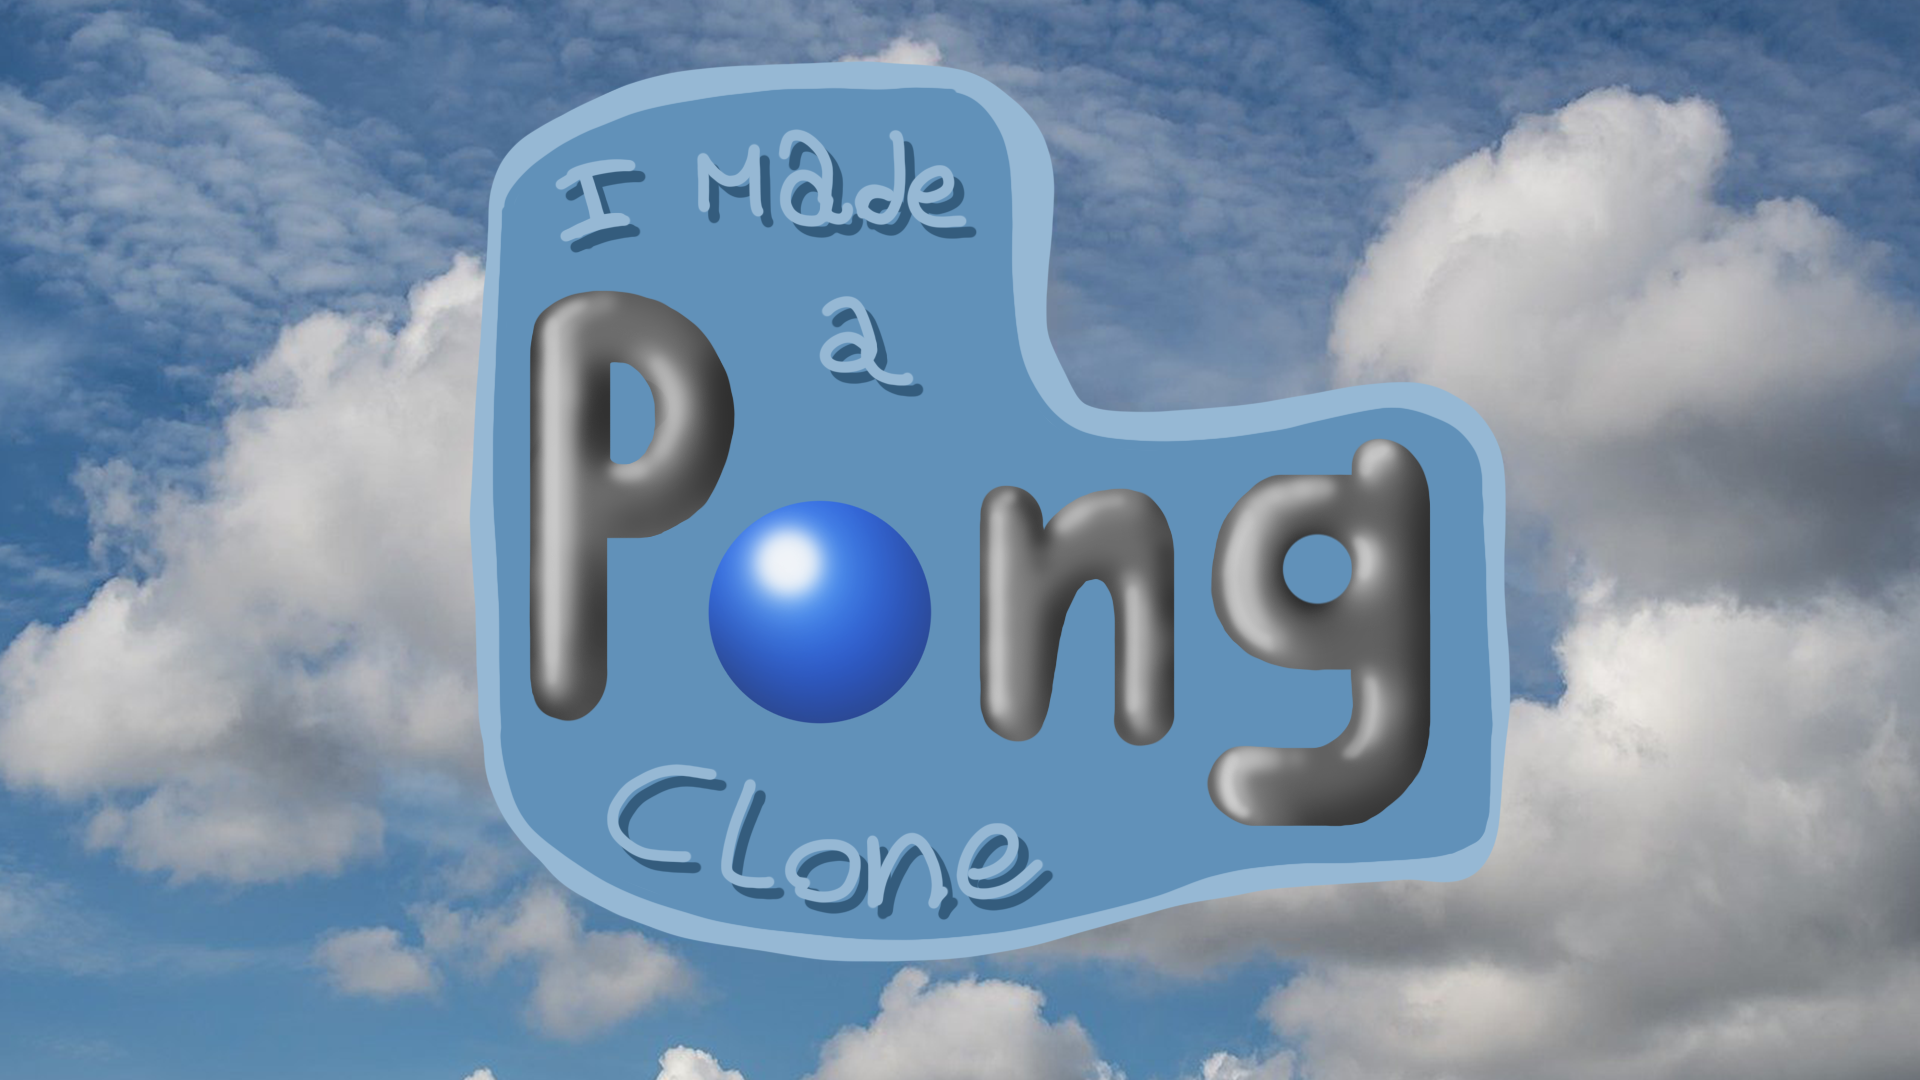 I made a pong clone